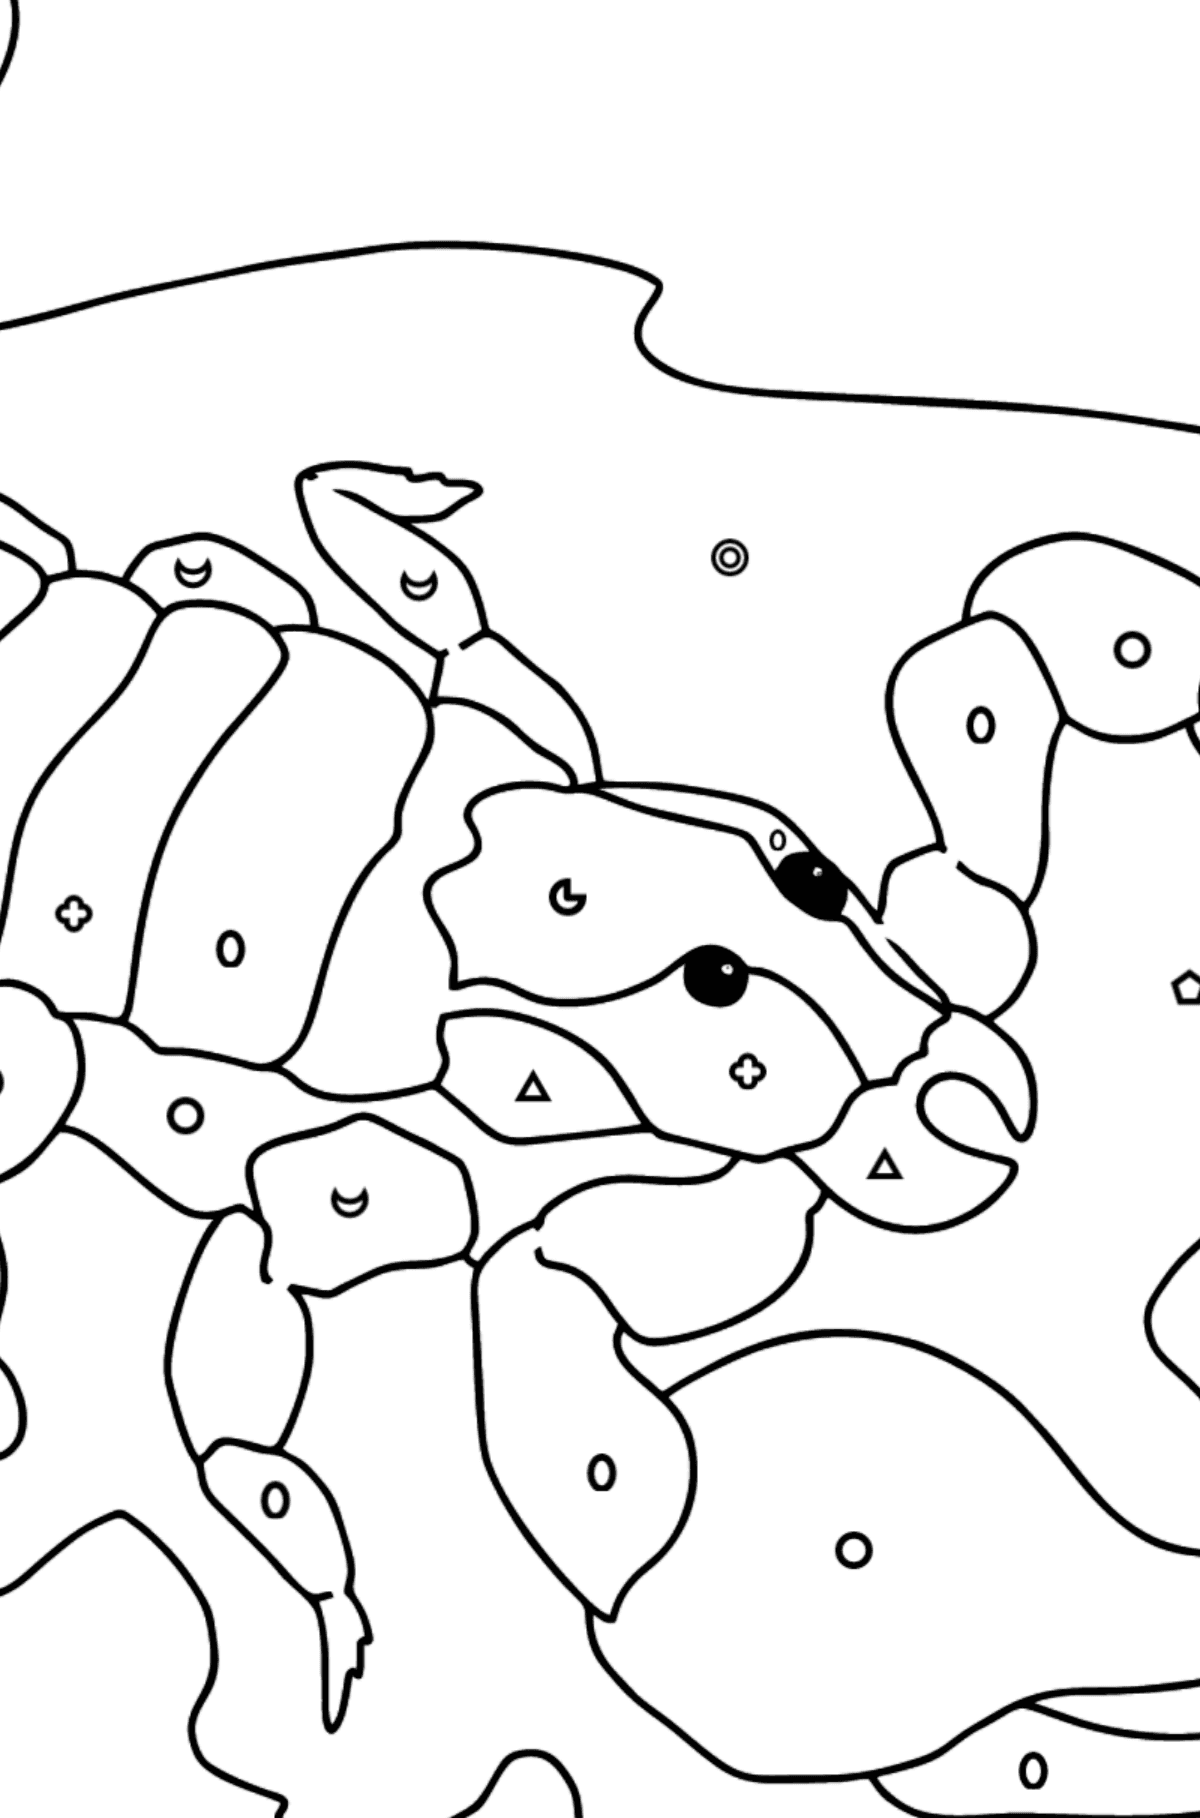 Kleurplaat zwarte schorpioen (moeilijk) - Kleuren met geometrische figuren voor kinderen